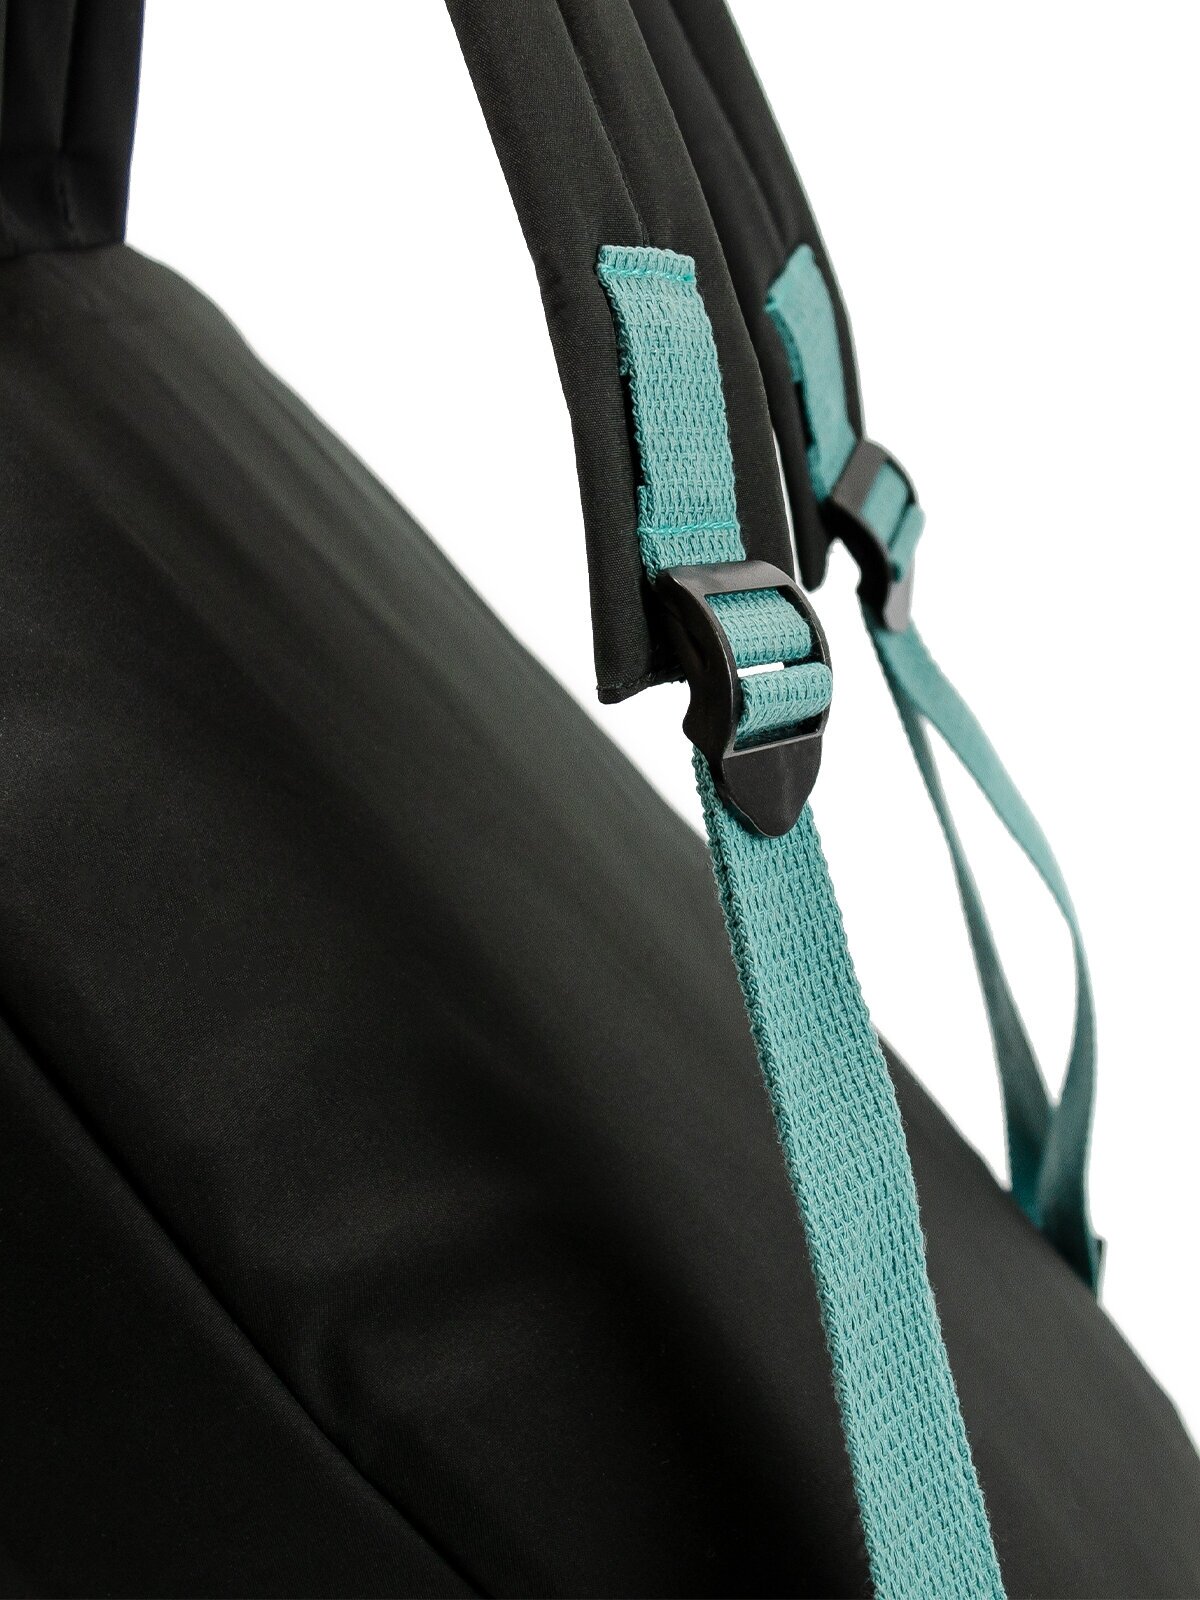 Рюкзак (черный-синий) Just for fun мужской женский городской спортивный школьный повседневный офис для ноутбука туристический походный сумка ранец